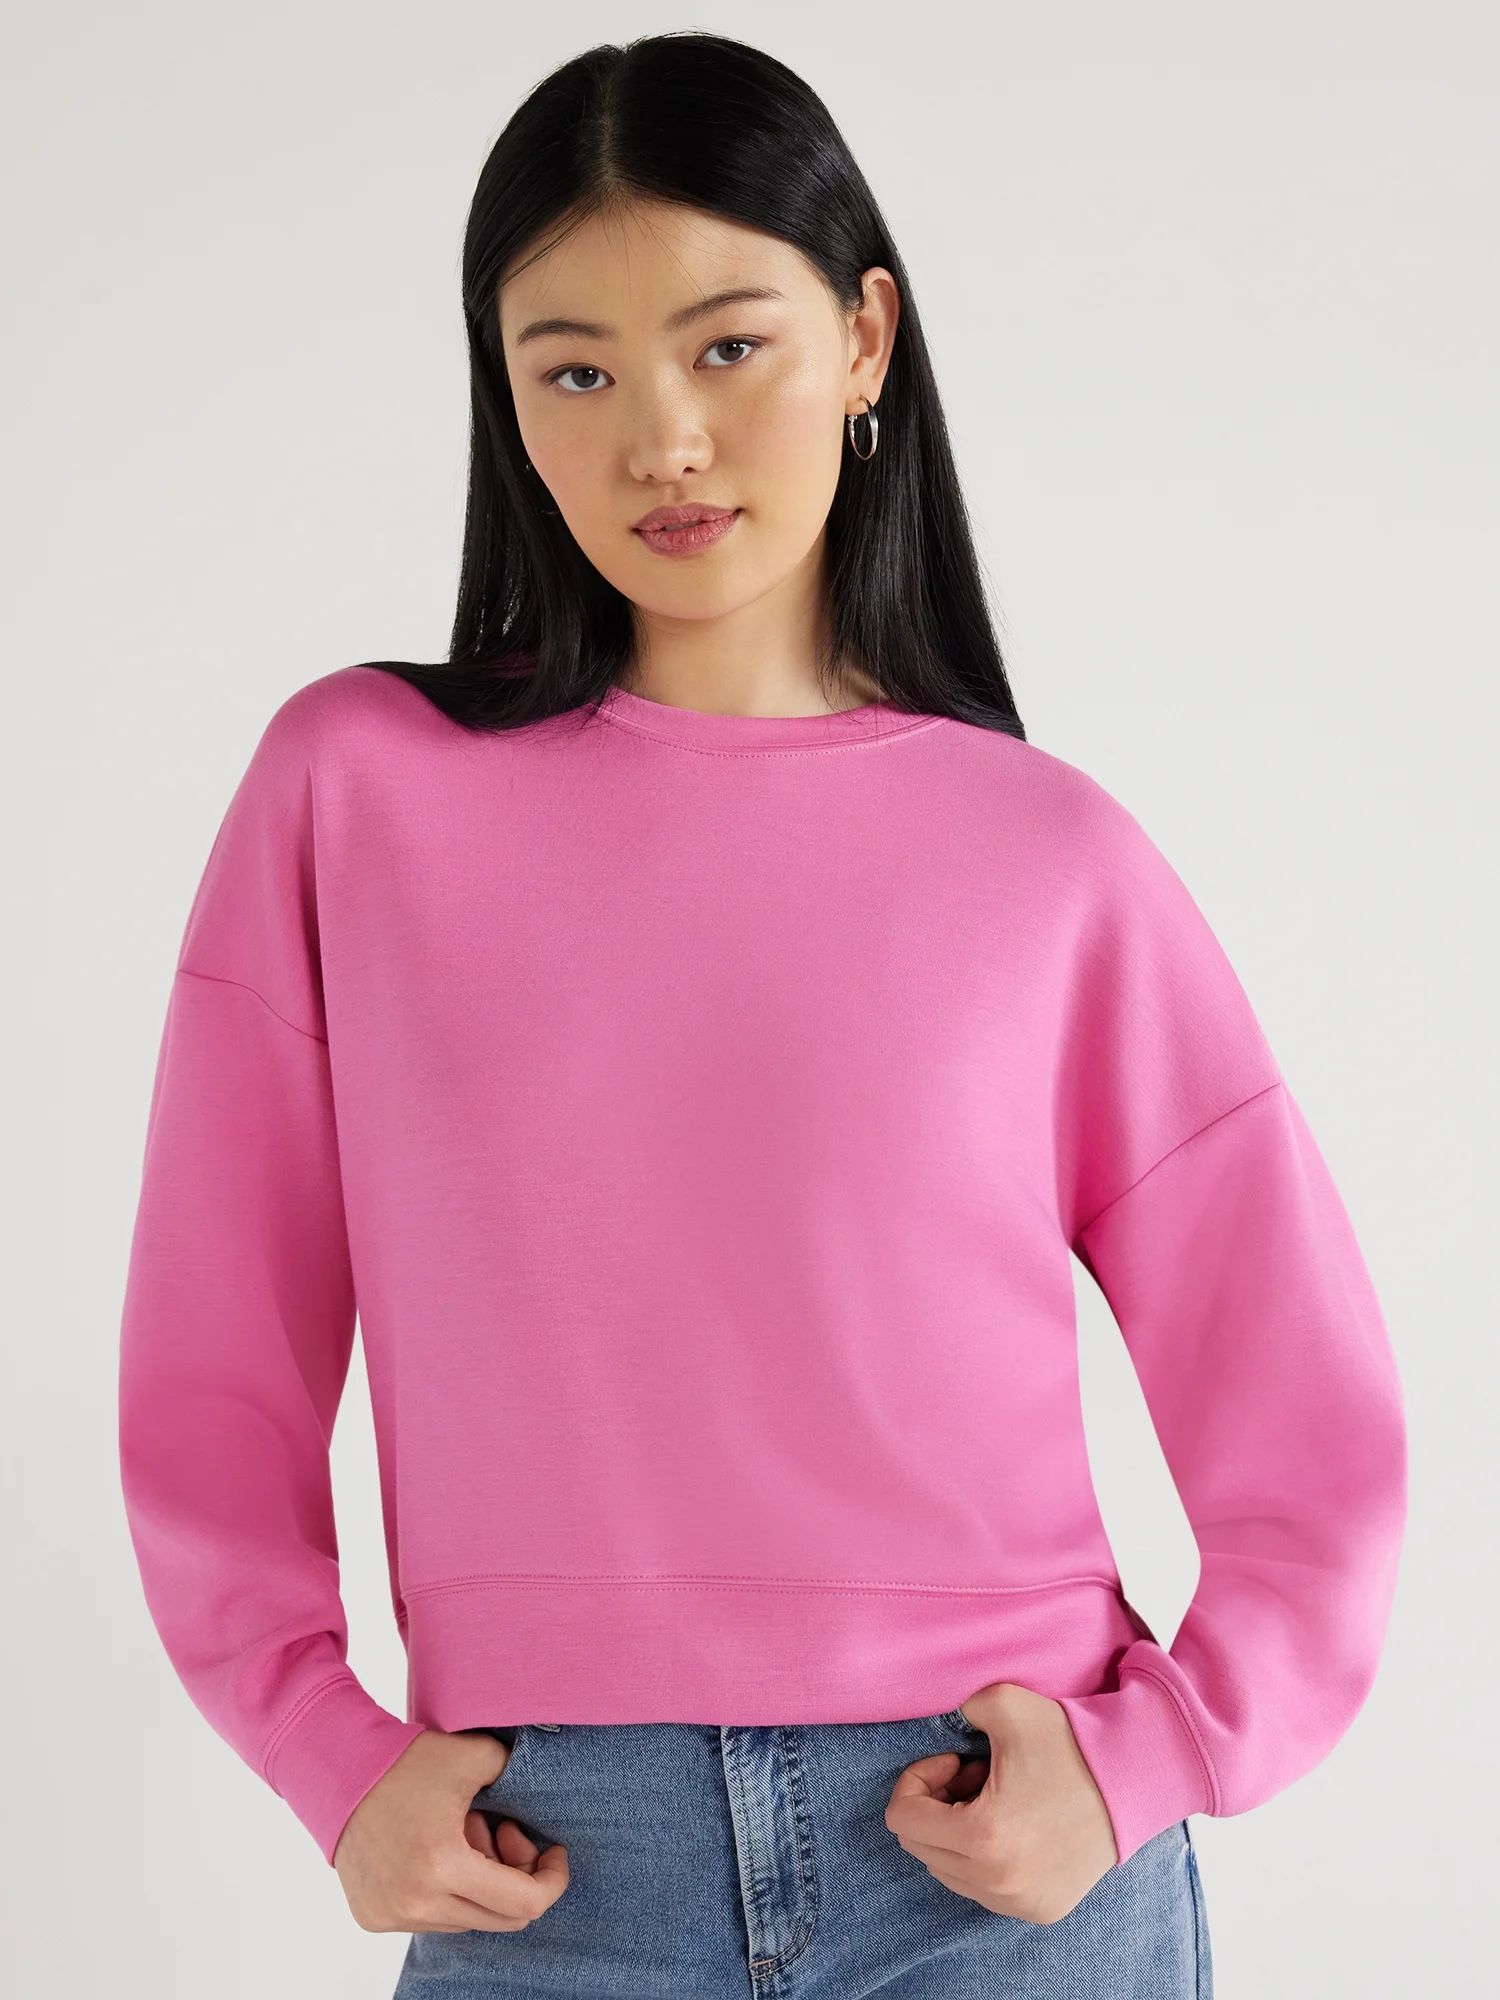 Scoop Women's Scuba Knit Cropped Sweatshirt with Drop Sleeves, Size XS-XXL | Walmart (US)